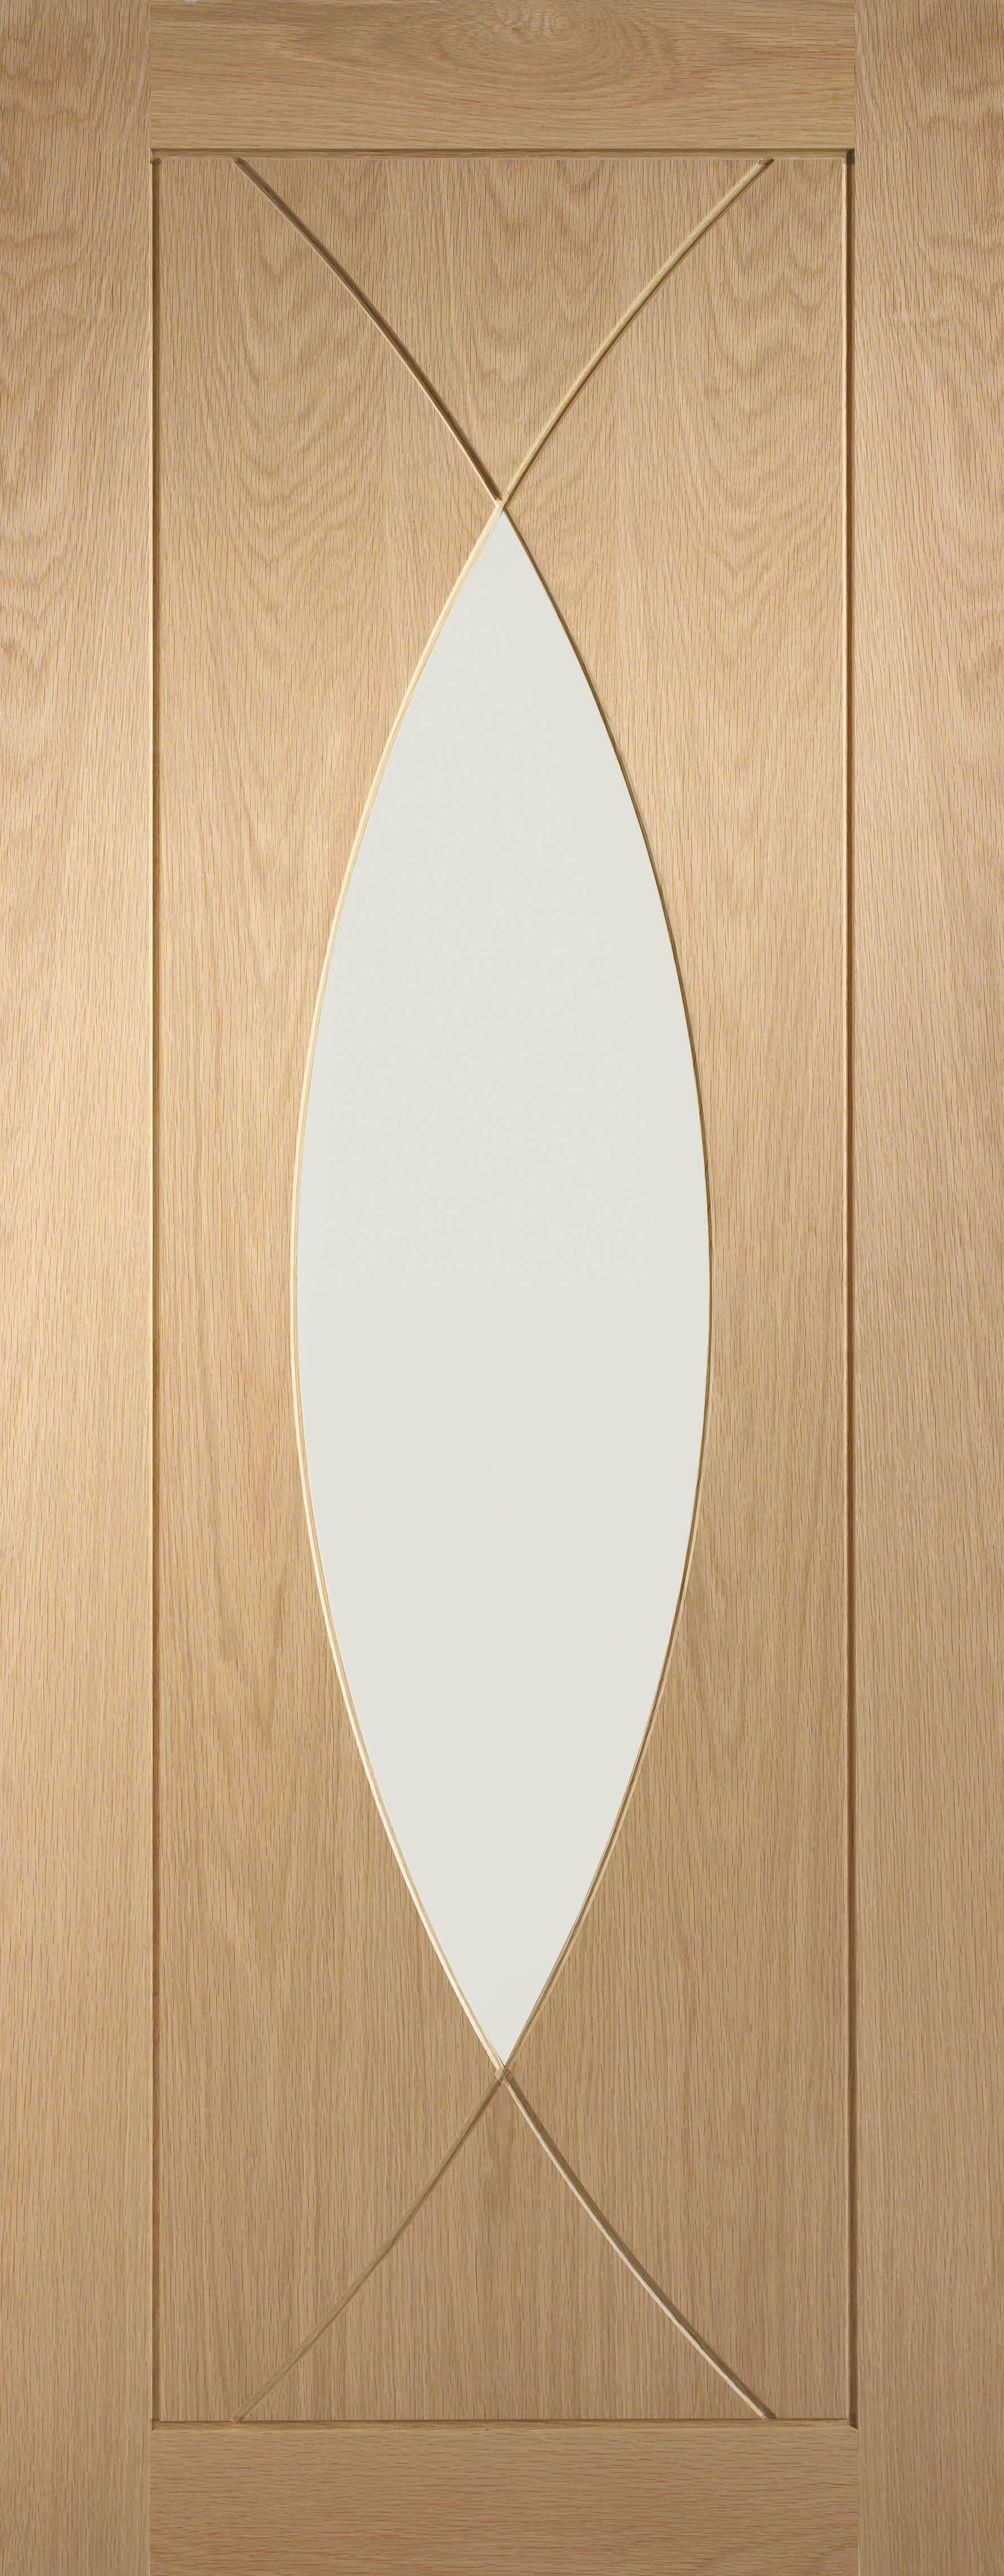 XL Joinery Pesaro Glazed Oak Patterned Internal Door